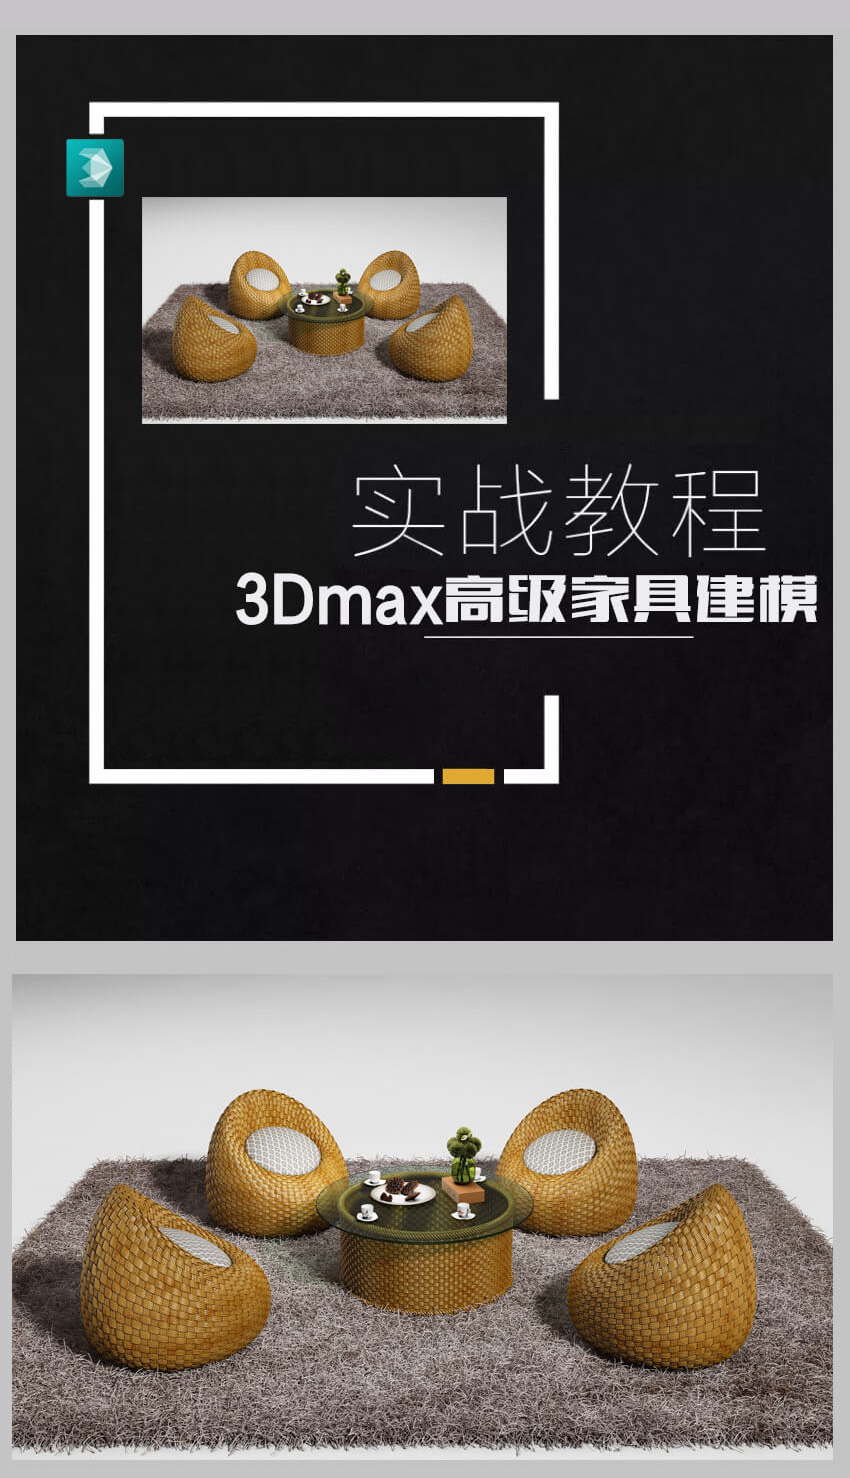 3DMax竹编、藤编家具建模渲染教程